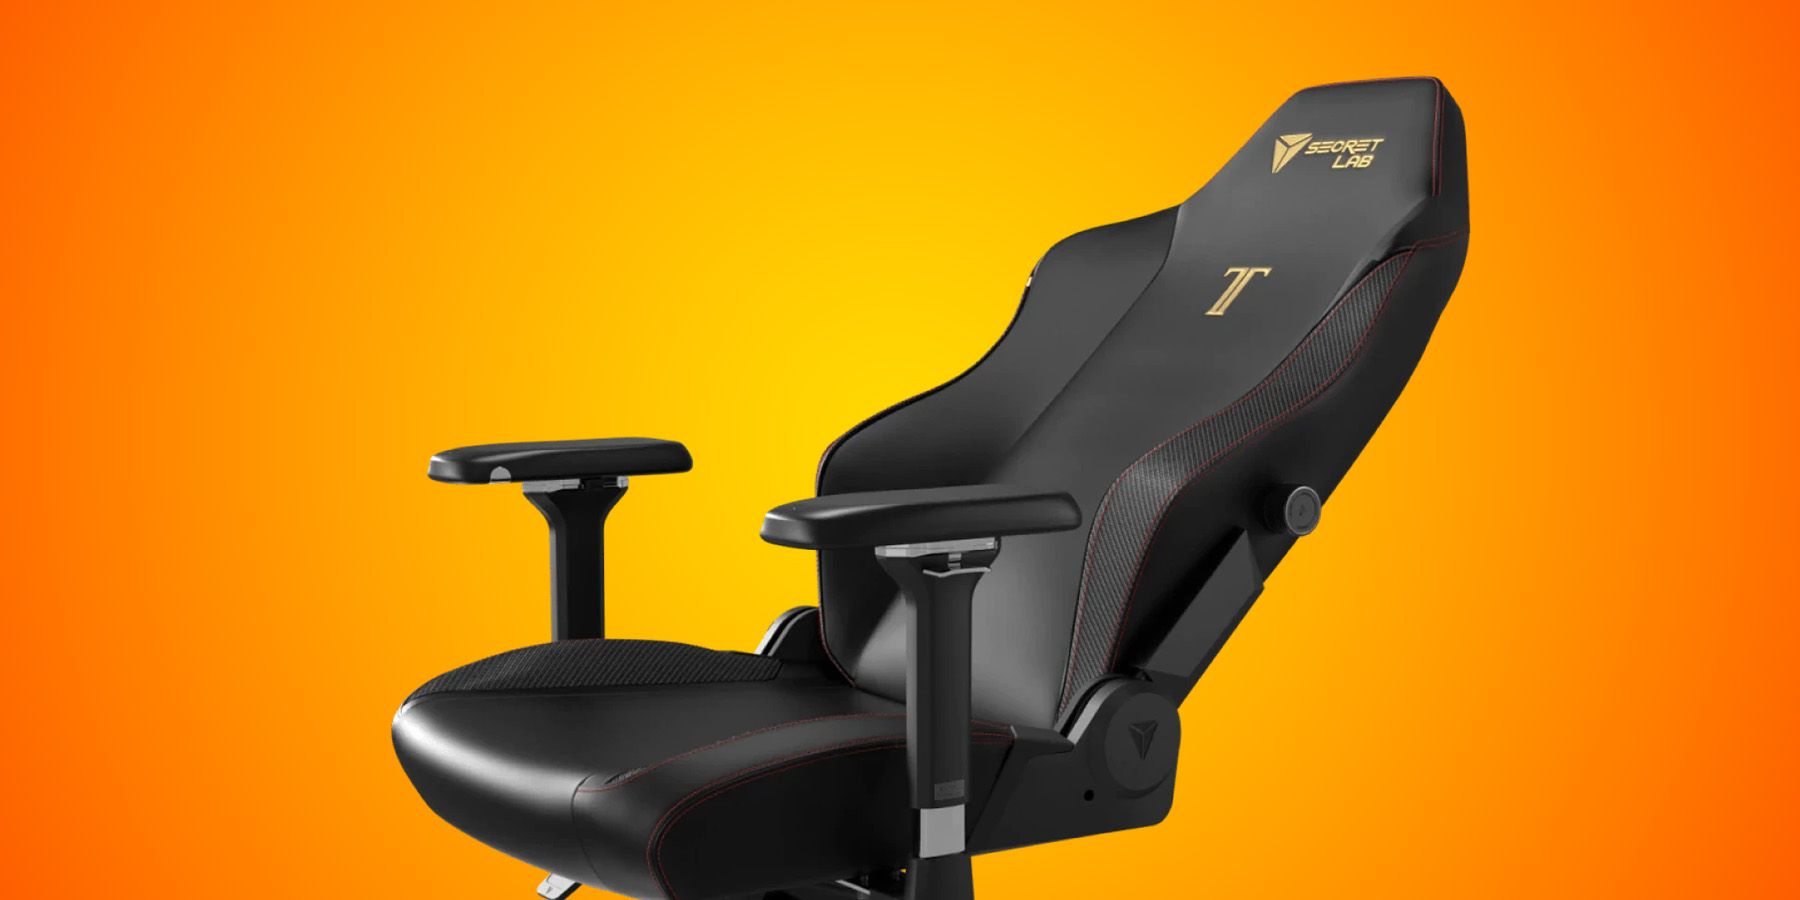 Comprar una silla gaming XL